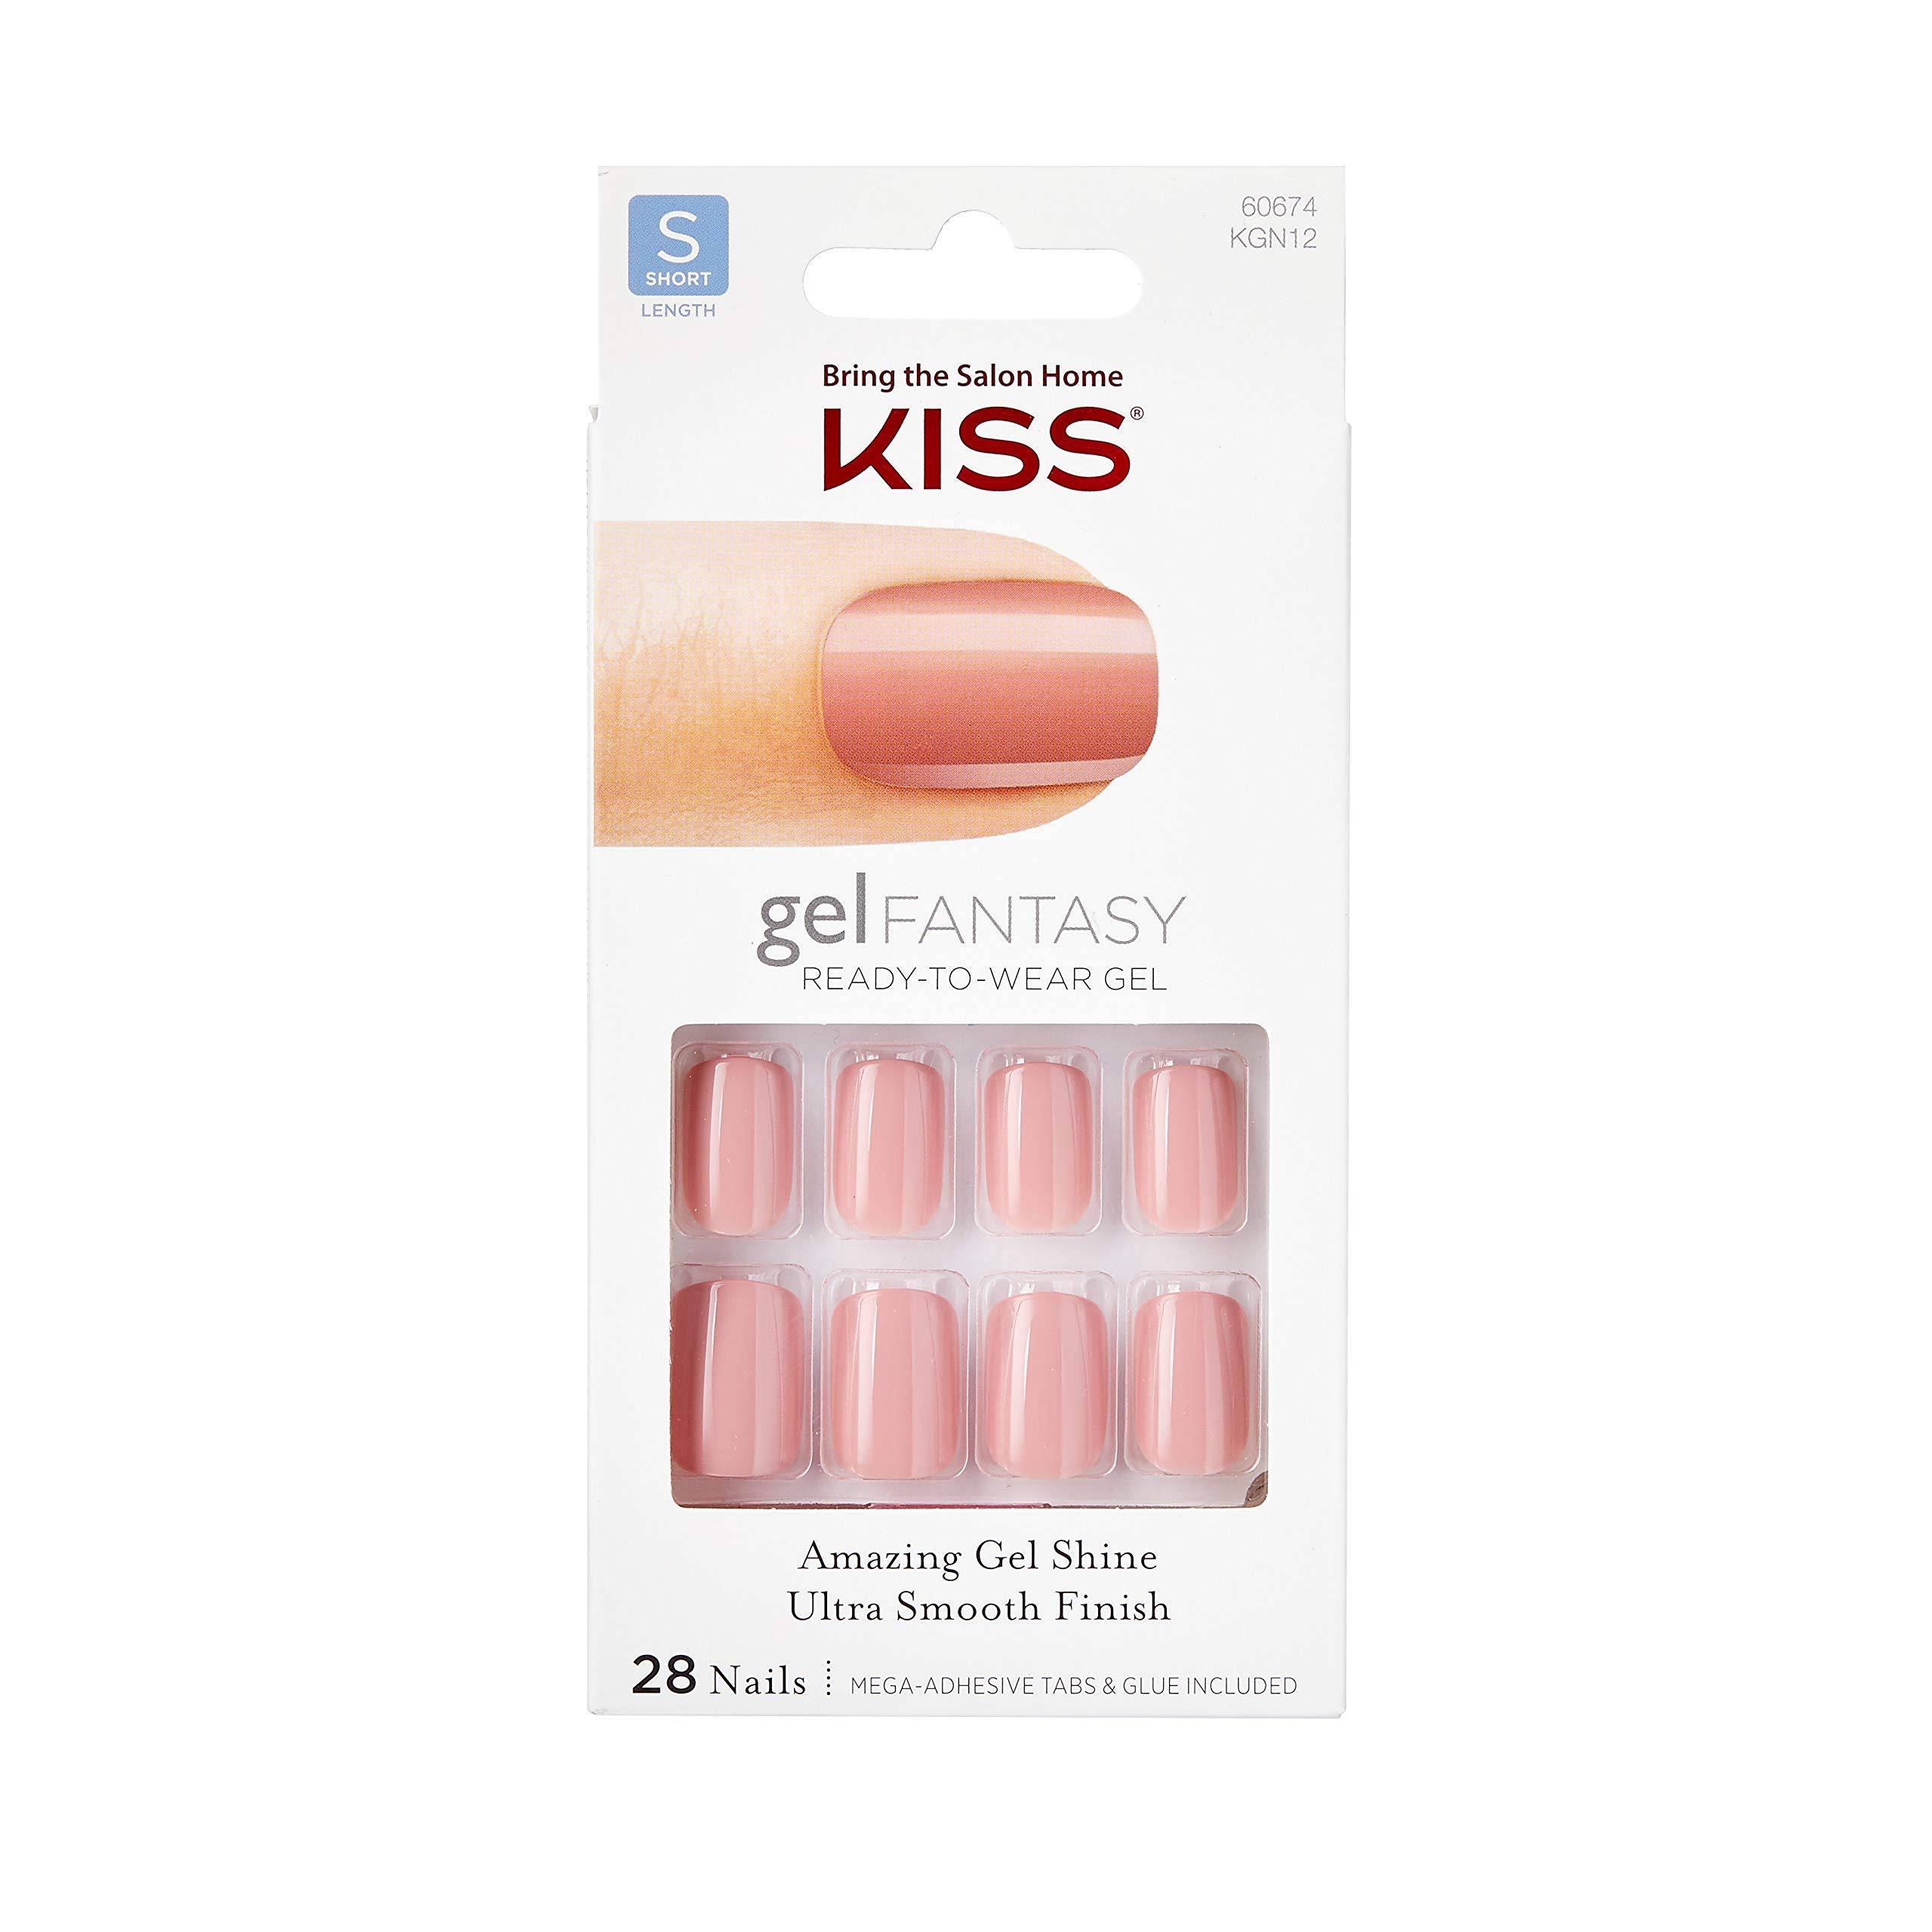 Kiss Gel Fantasy Nails - Short Length, Mauve Pink